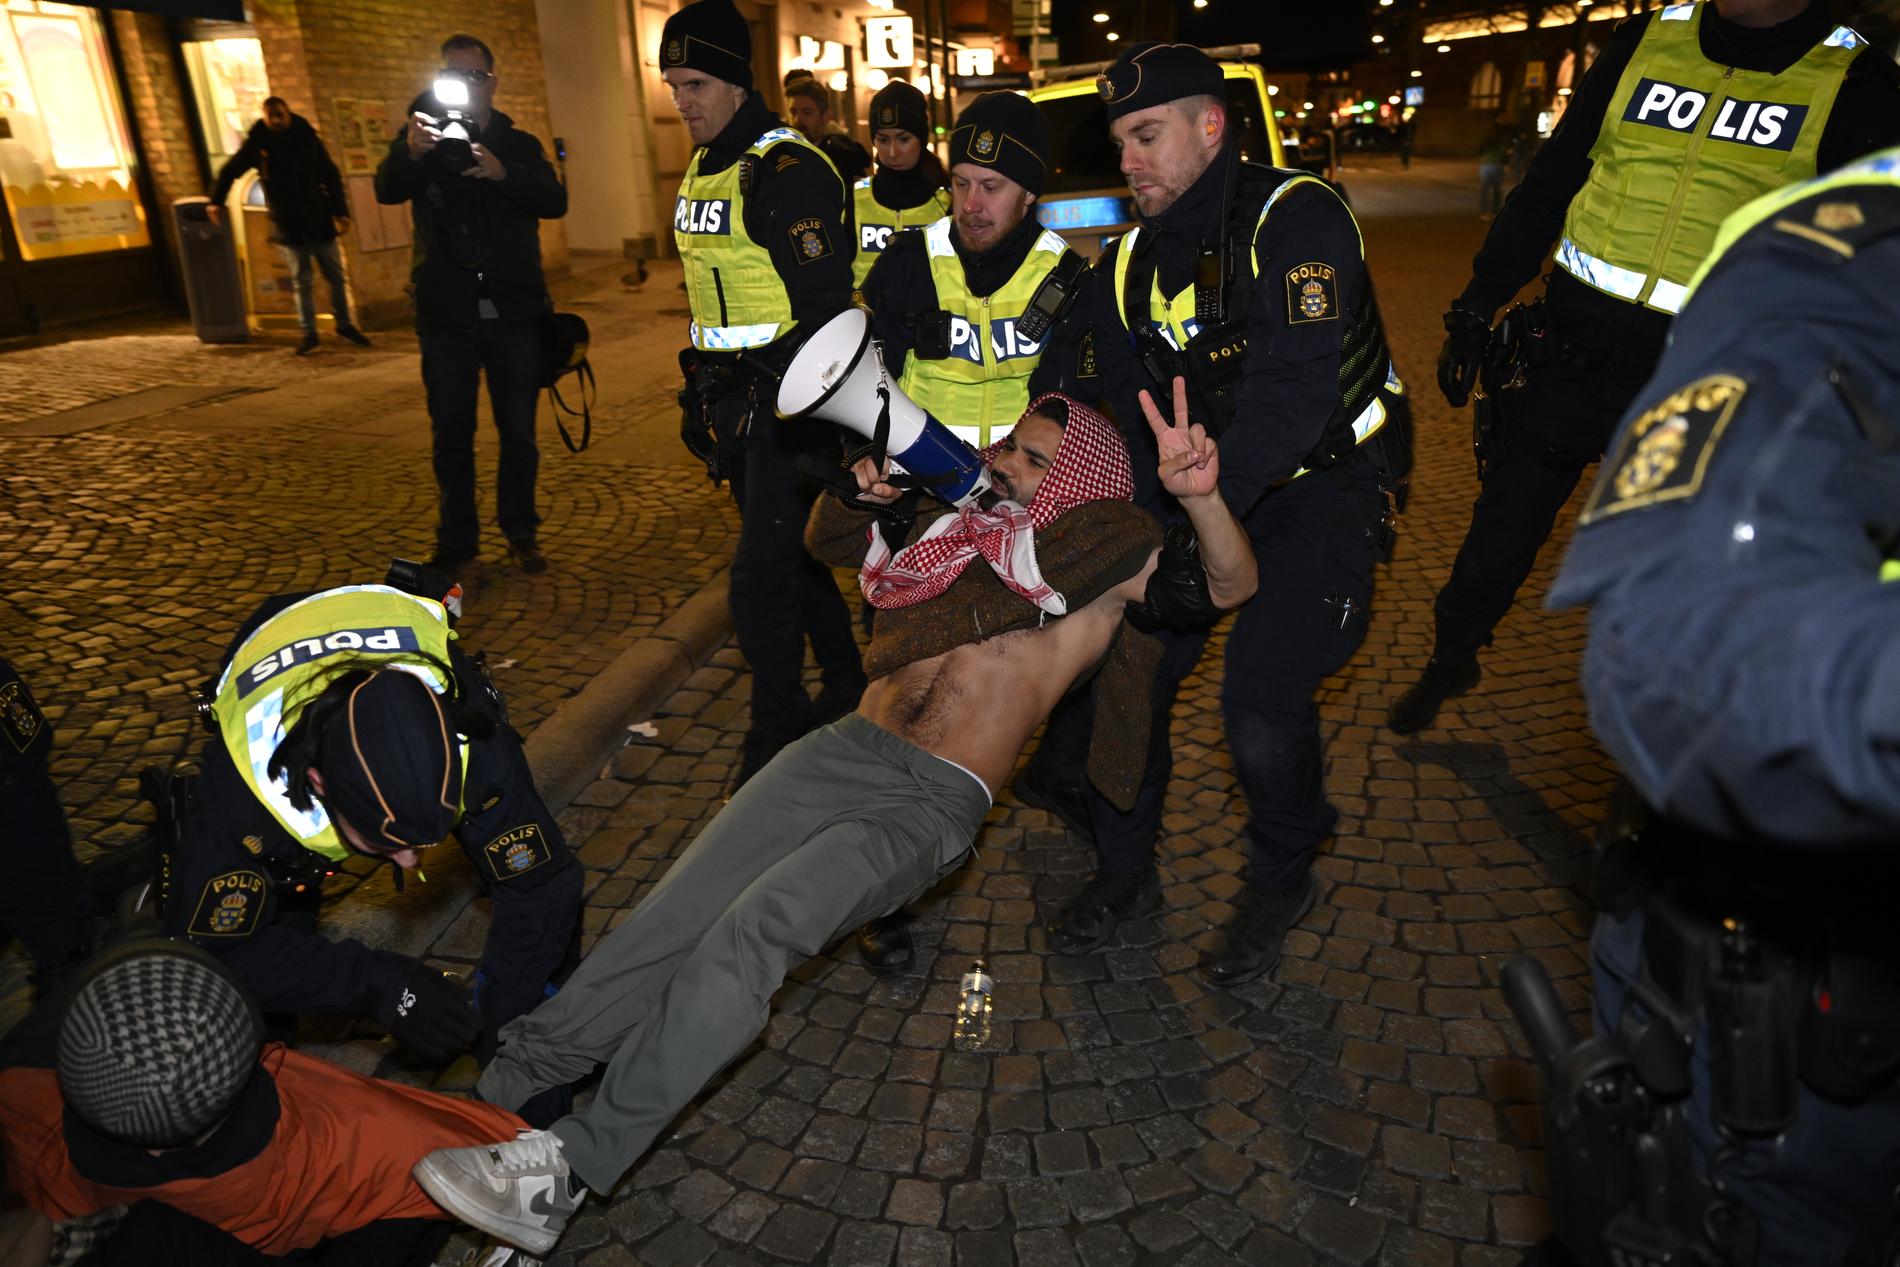 En person som protesterar på Stortorget tas om hand av polisen i samband med att statsminister Ulf Kristersson besöker Studentafton i Stadshallen i Lund.